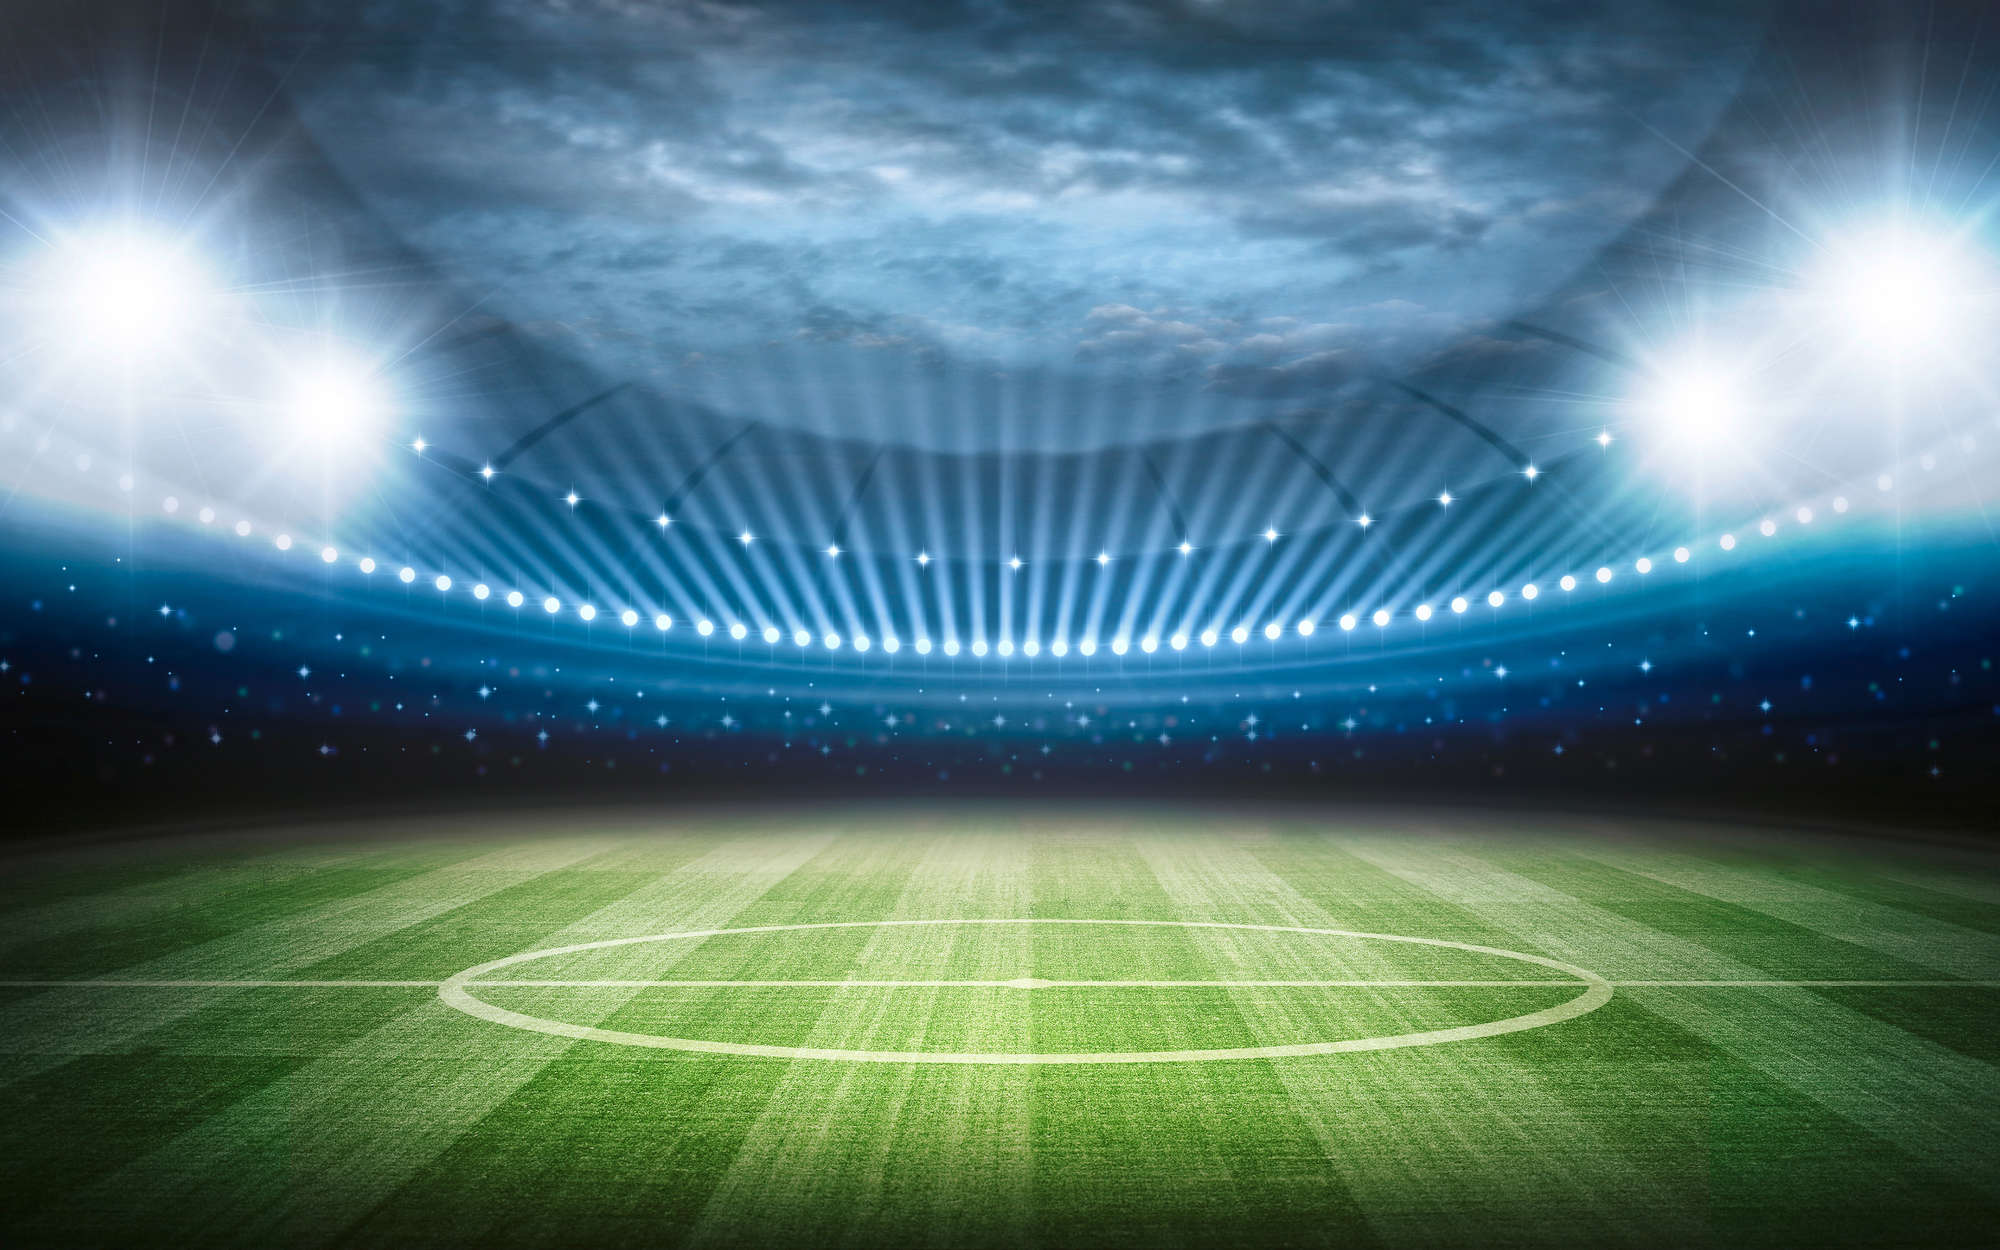             Fußball Fototapete Stadion mit Flutlicht – Premium Glattvlies
        